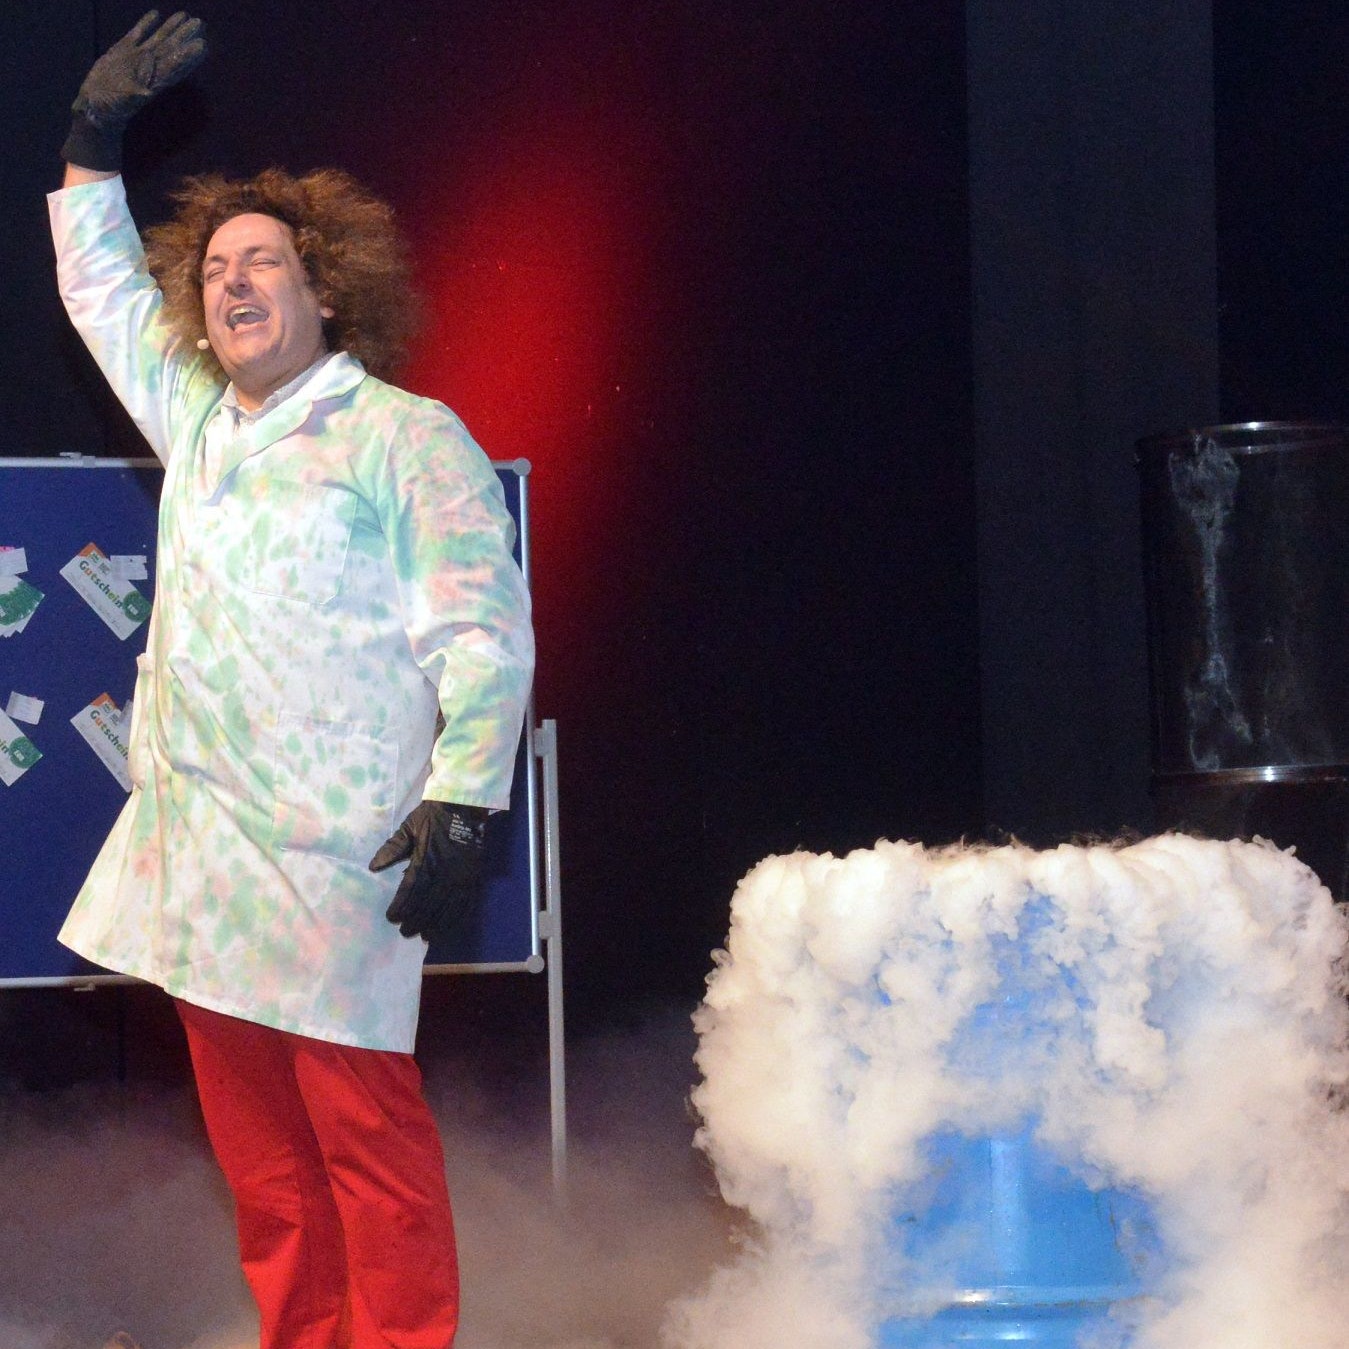 Tolle Show: Bei Wissenschafts-Comedian Konrad Stöckel zischte, qualmte und knallte es bei der Staubexplosion und dem Feuertornado und es waberte flüssiger Stickstoff über die Bühne. Foto: Siemer